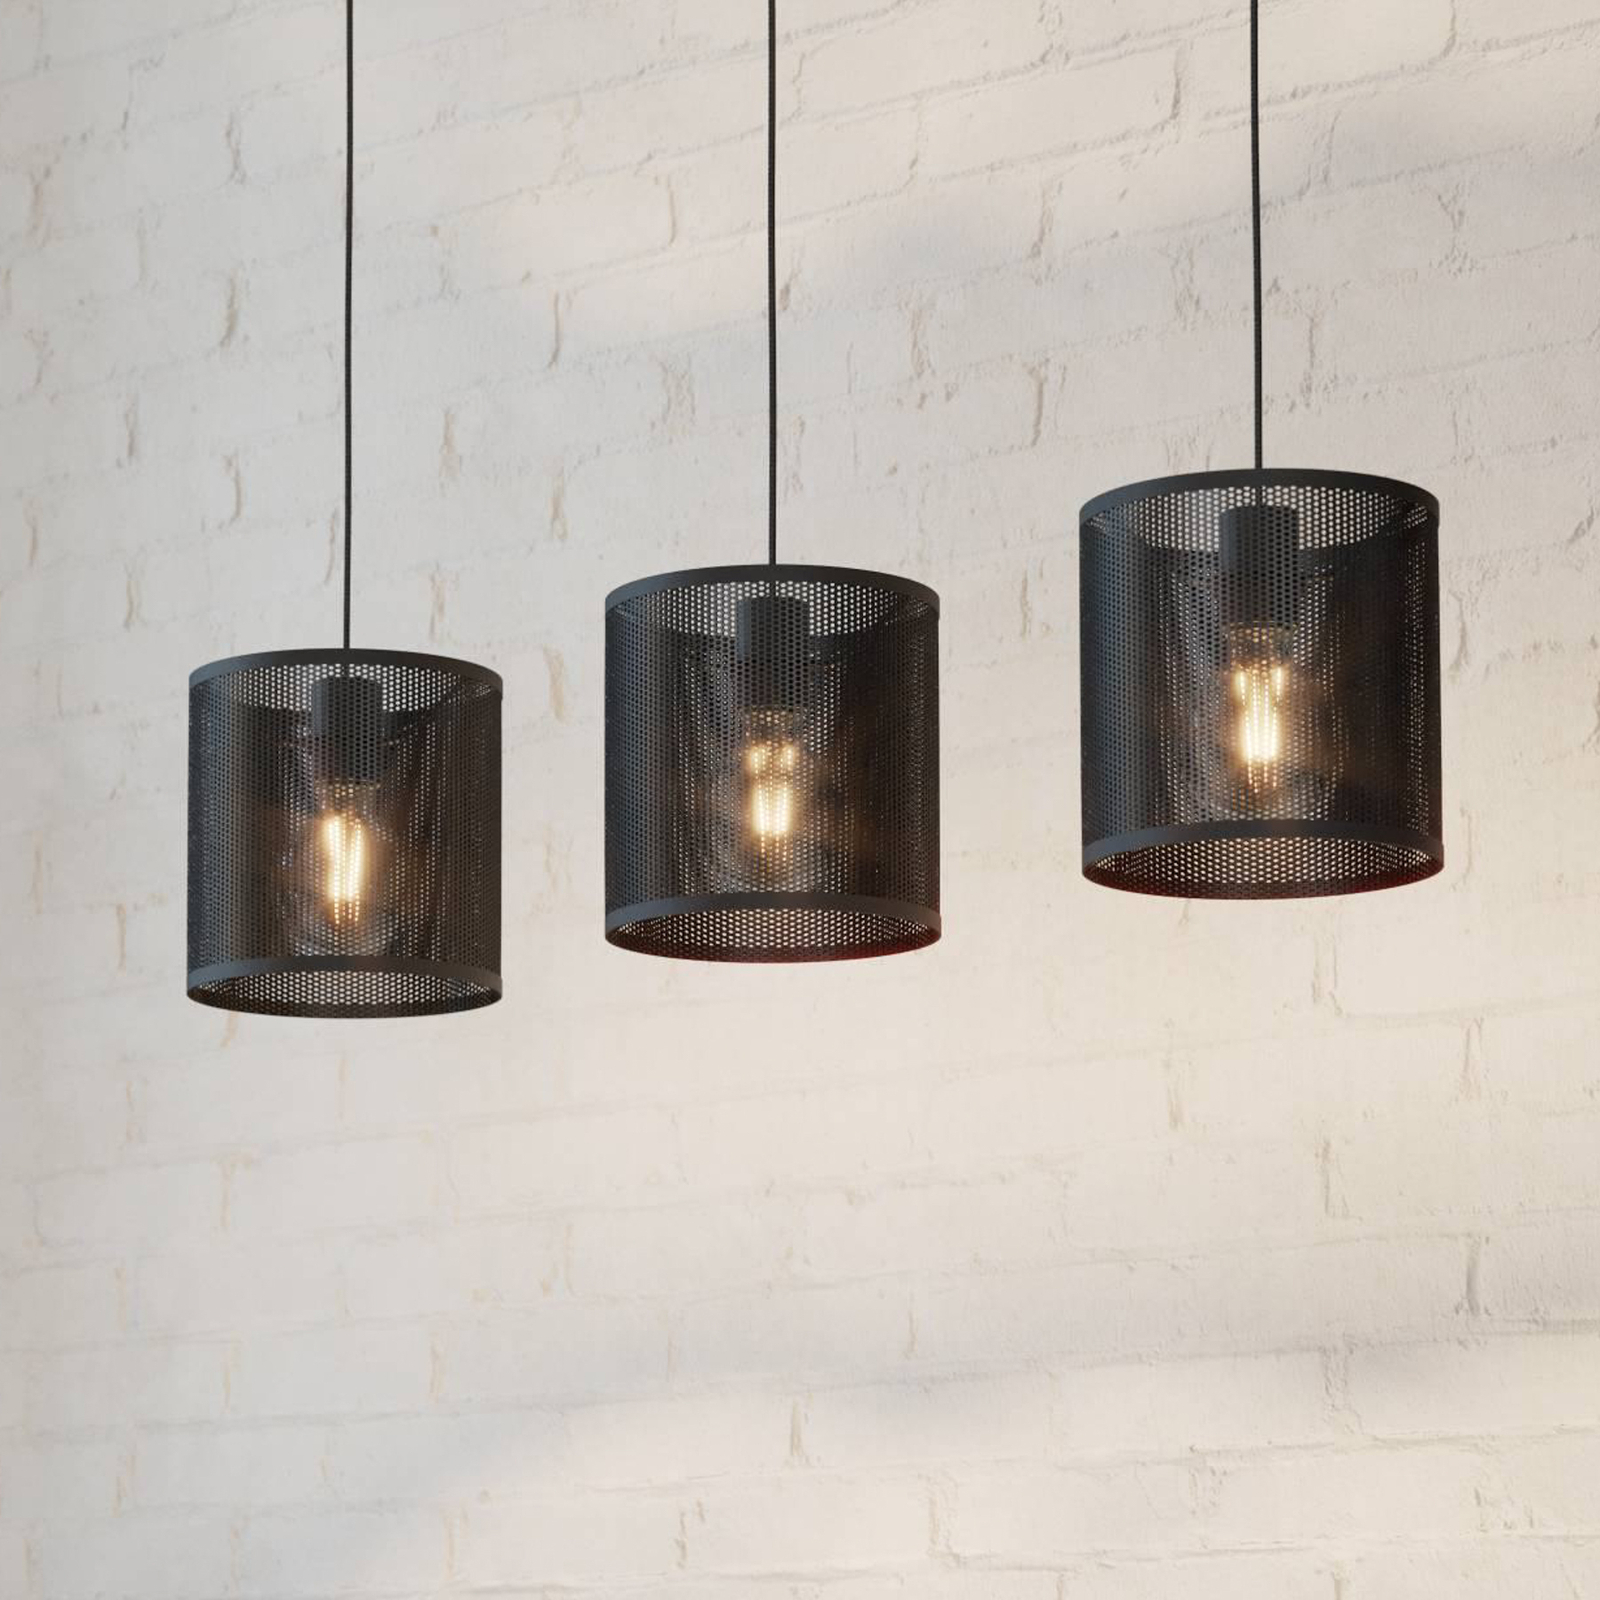 Manby hængelampe, længde 90 cm, sort, 3 lyskilder, stål